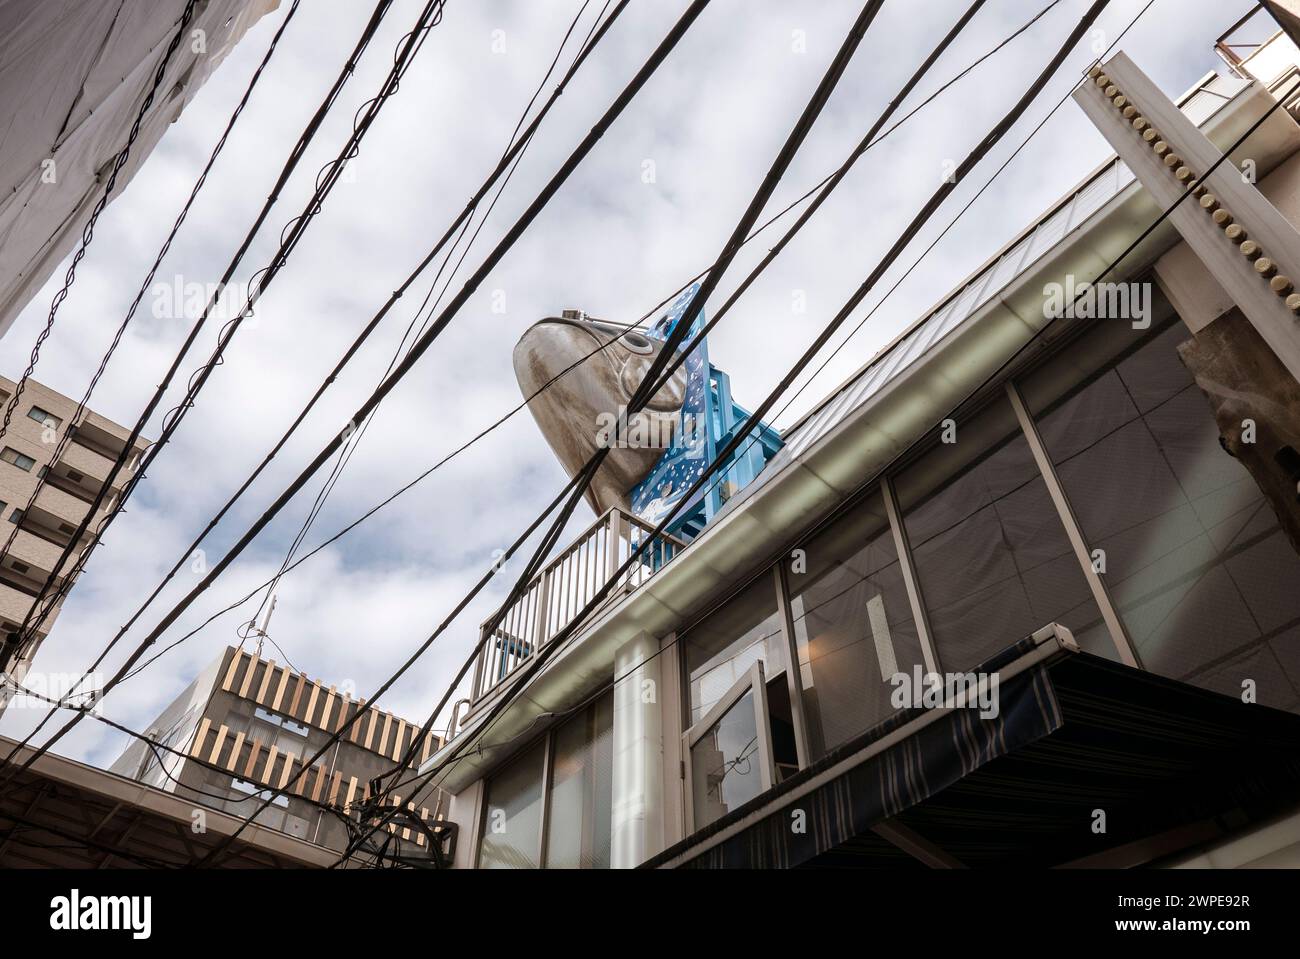 Tokyo- Japon- vers novembre 2018. Vue d'une rue au marché aux poissons de Tsukiji avec des câbles d'air typiques et grande figure de poisson Adverese Banque D'Images